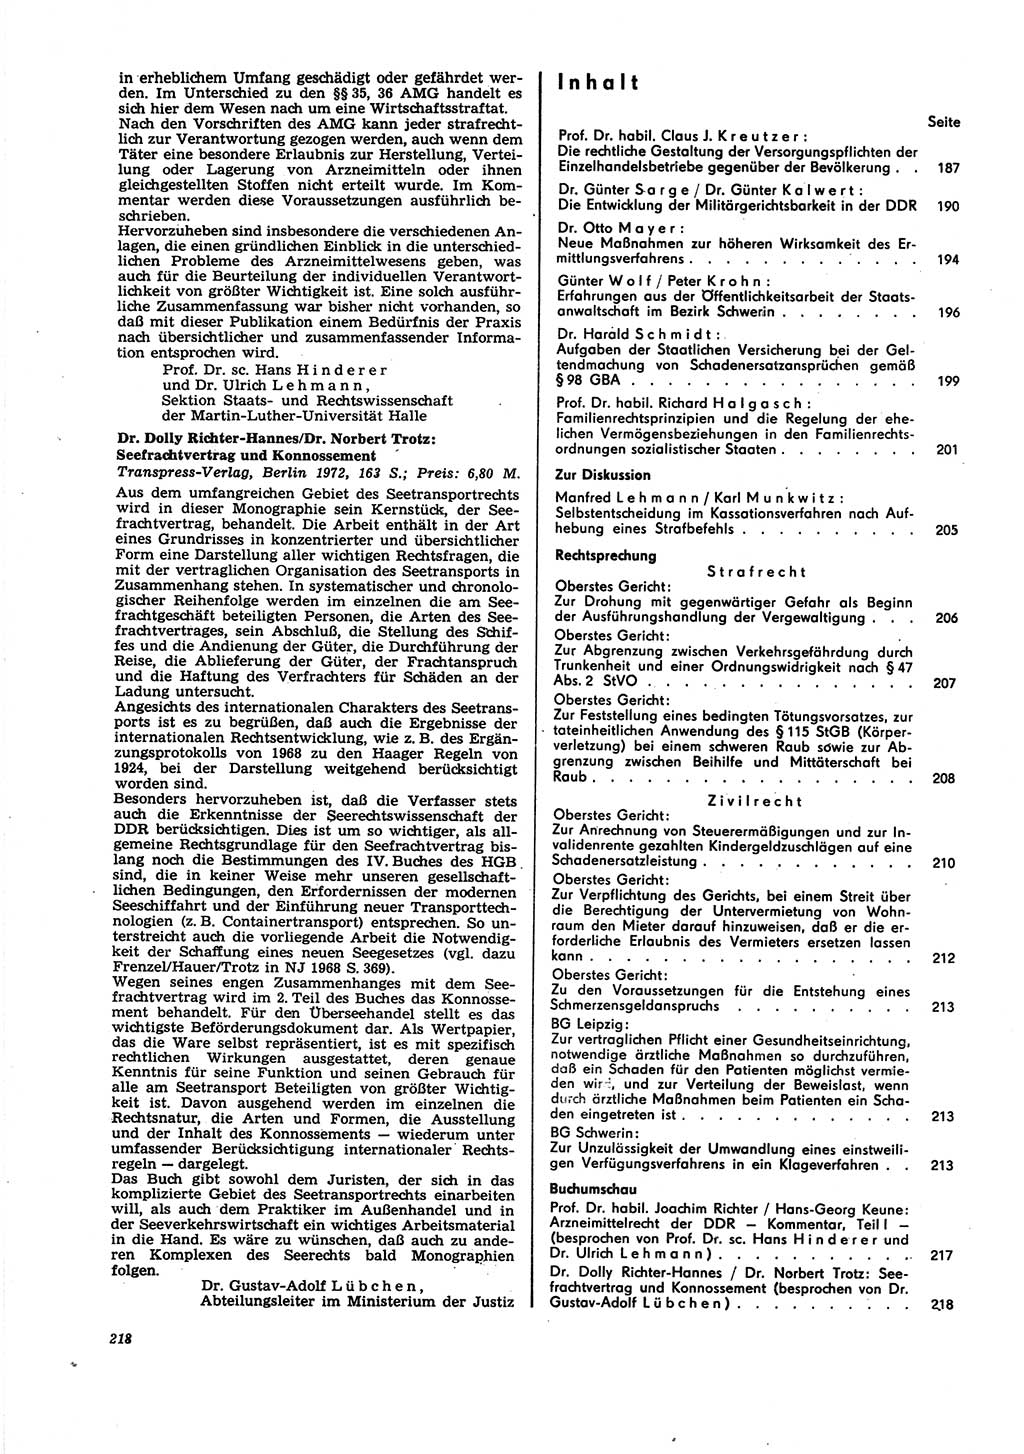 Neue Justiz (NJ), Zeitschrift für Recht und Rechtswissenschaft [Deutsche Demokratische Republik (DDR)], 27. Jahrgang 1973, Seite 218 (NJ DDR 1973, S. 218)